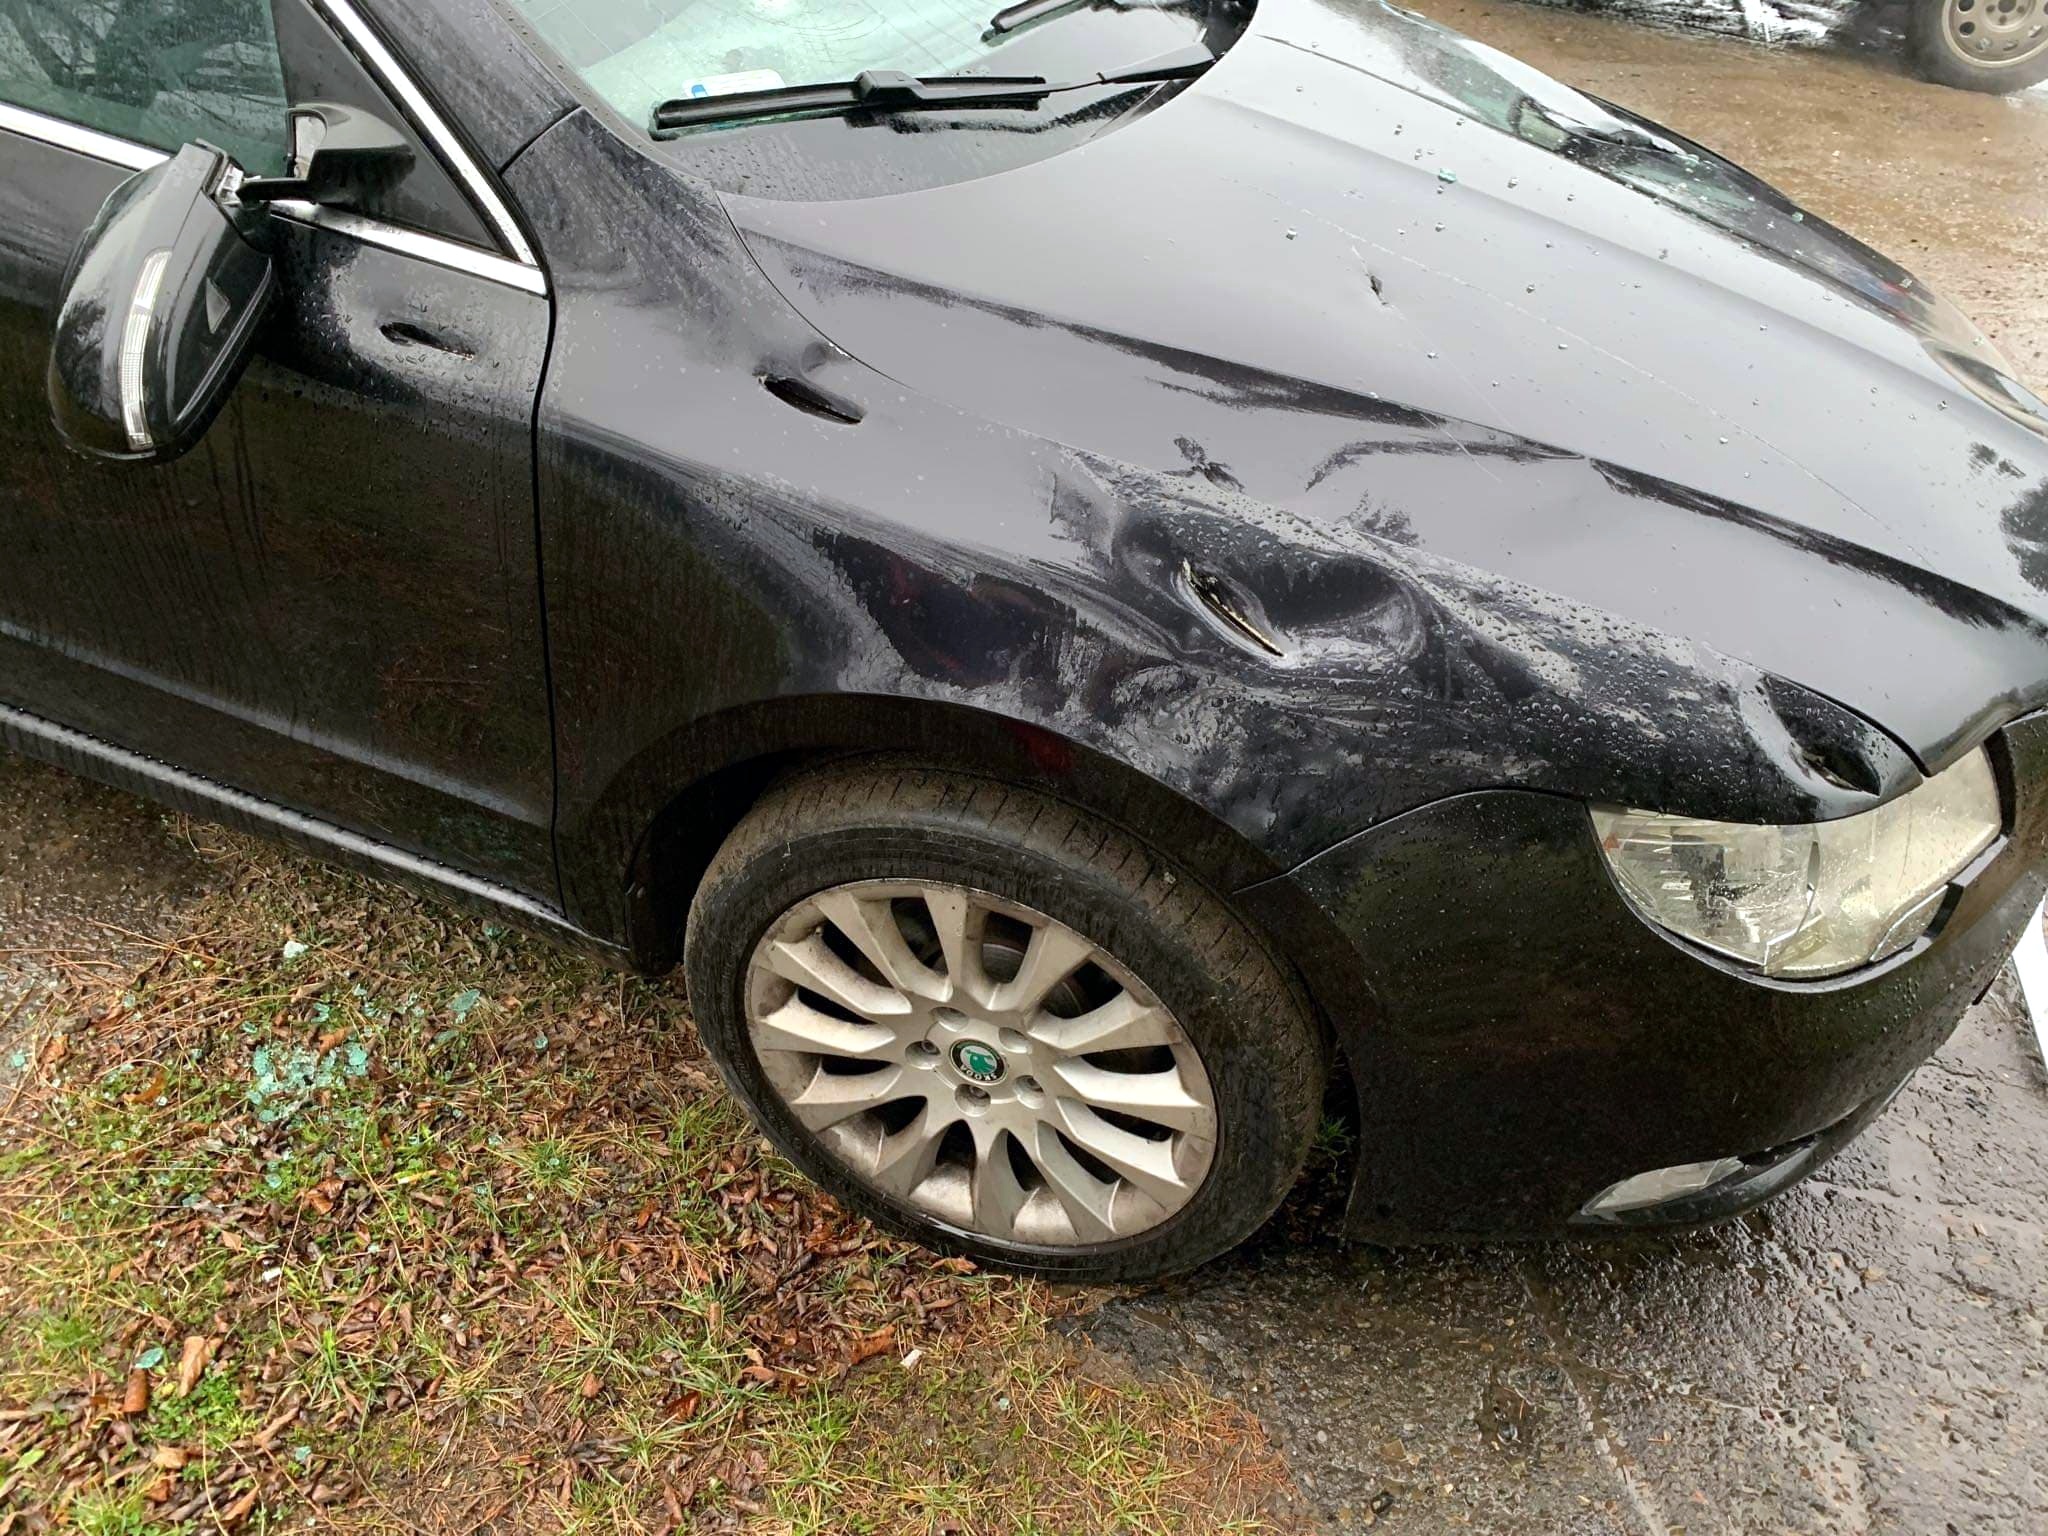 SANOK: Zdewastowany siekierą samochód na parkingu nad Sanem [ZDJĘCIA] - Zdjęcie główne